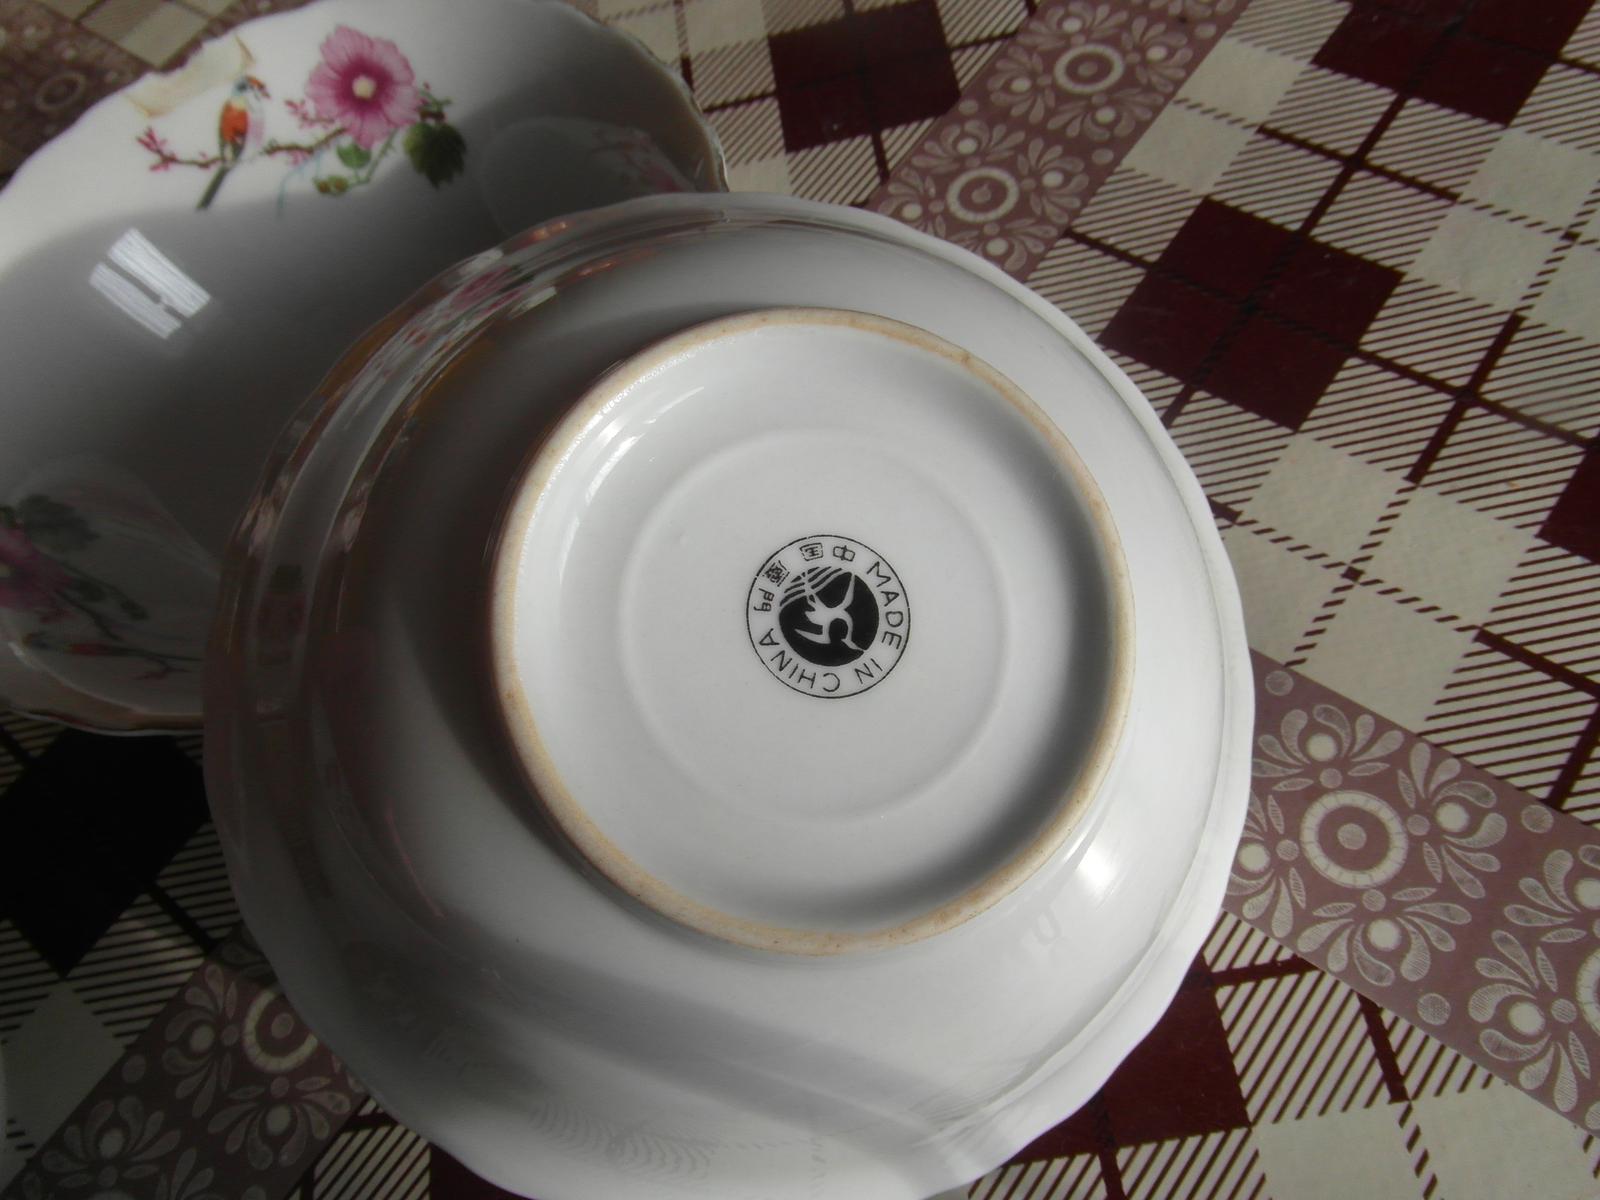 Porcelán - misky, taniere, šálky   - Obrázok č. 2